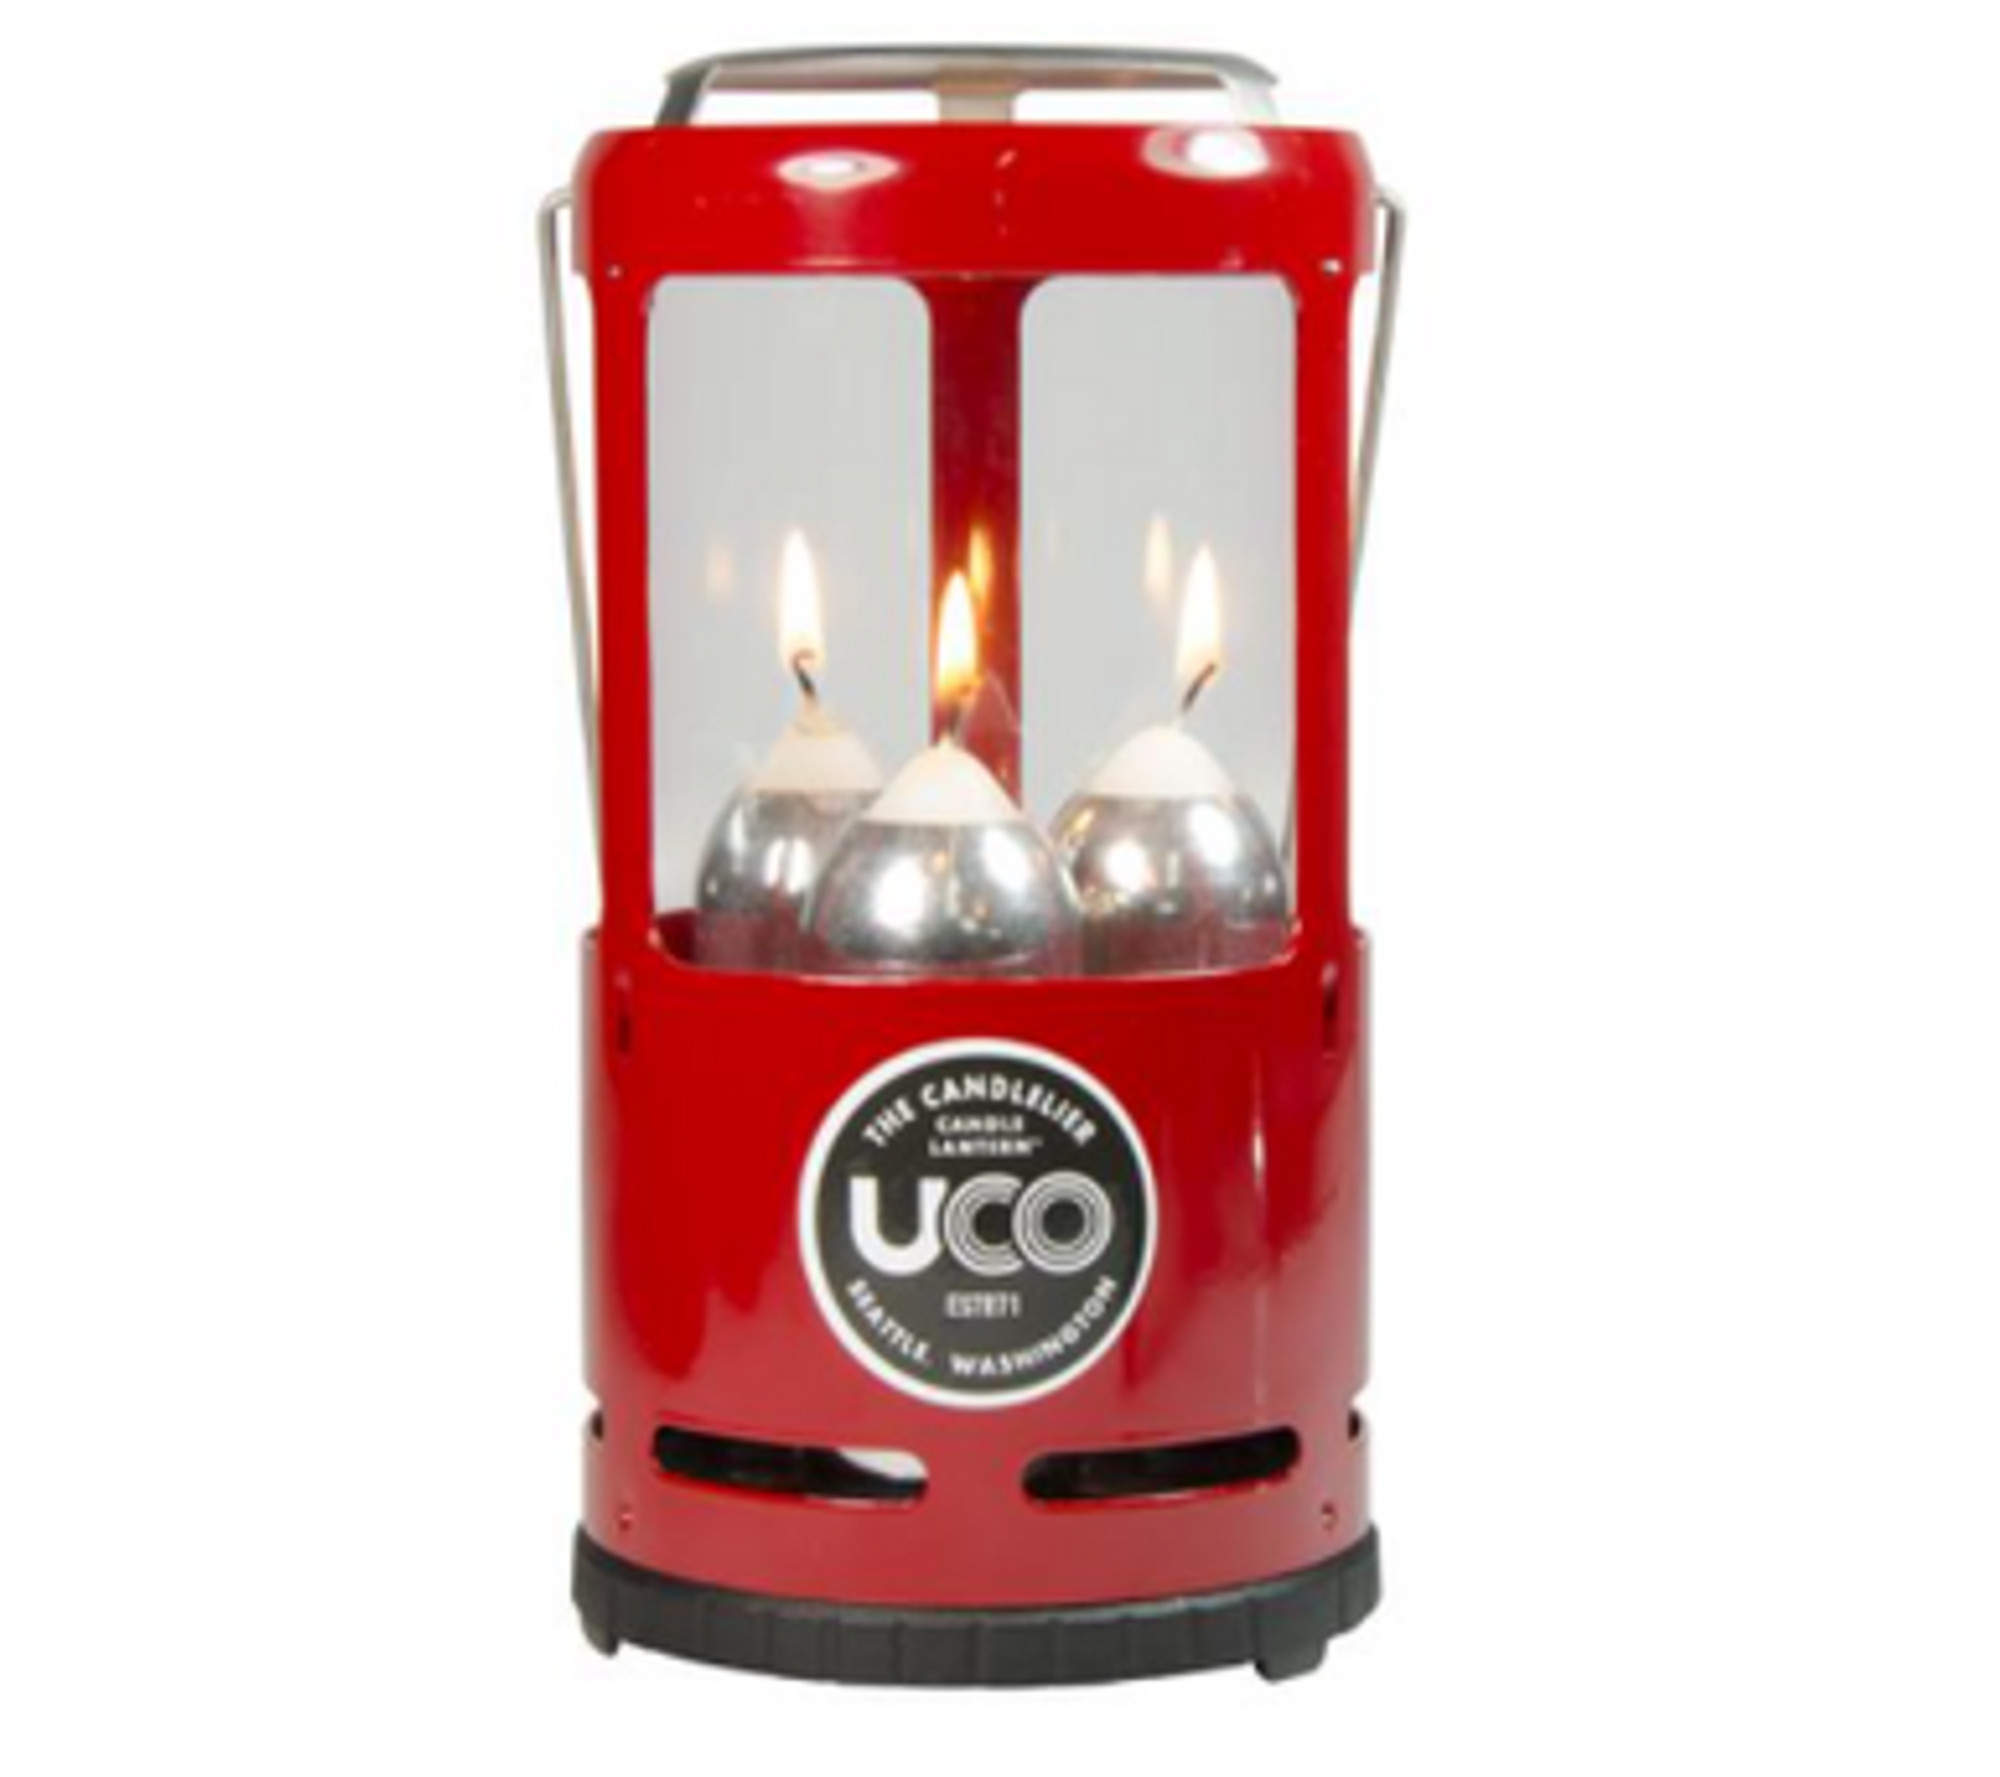 UCO Candlelier Lantern - 3 Candle